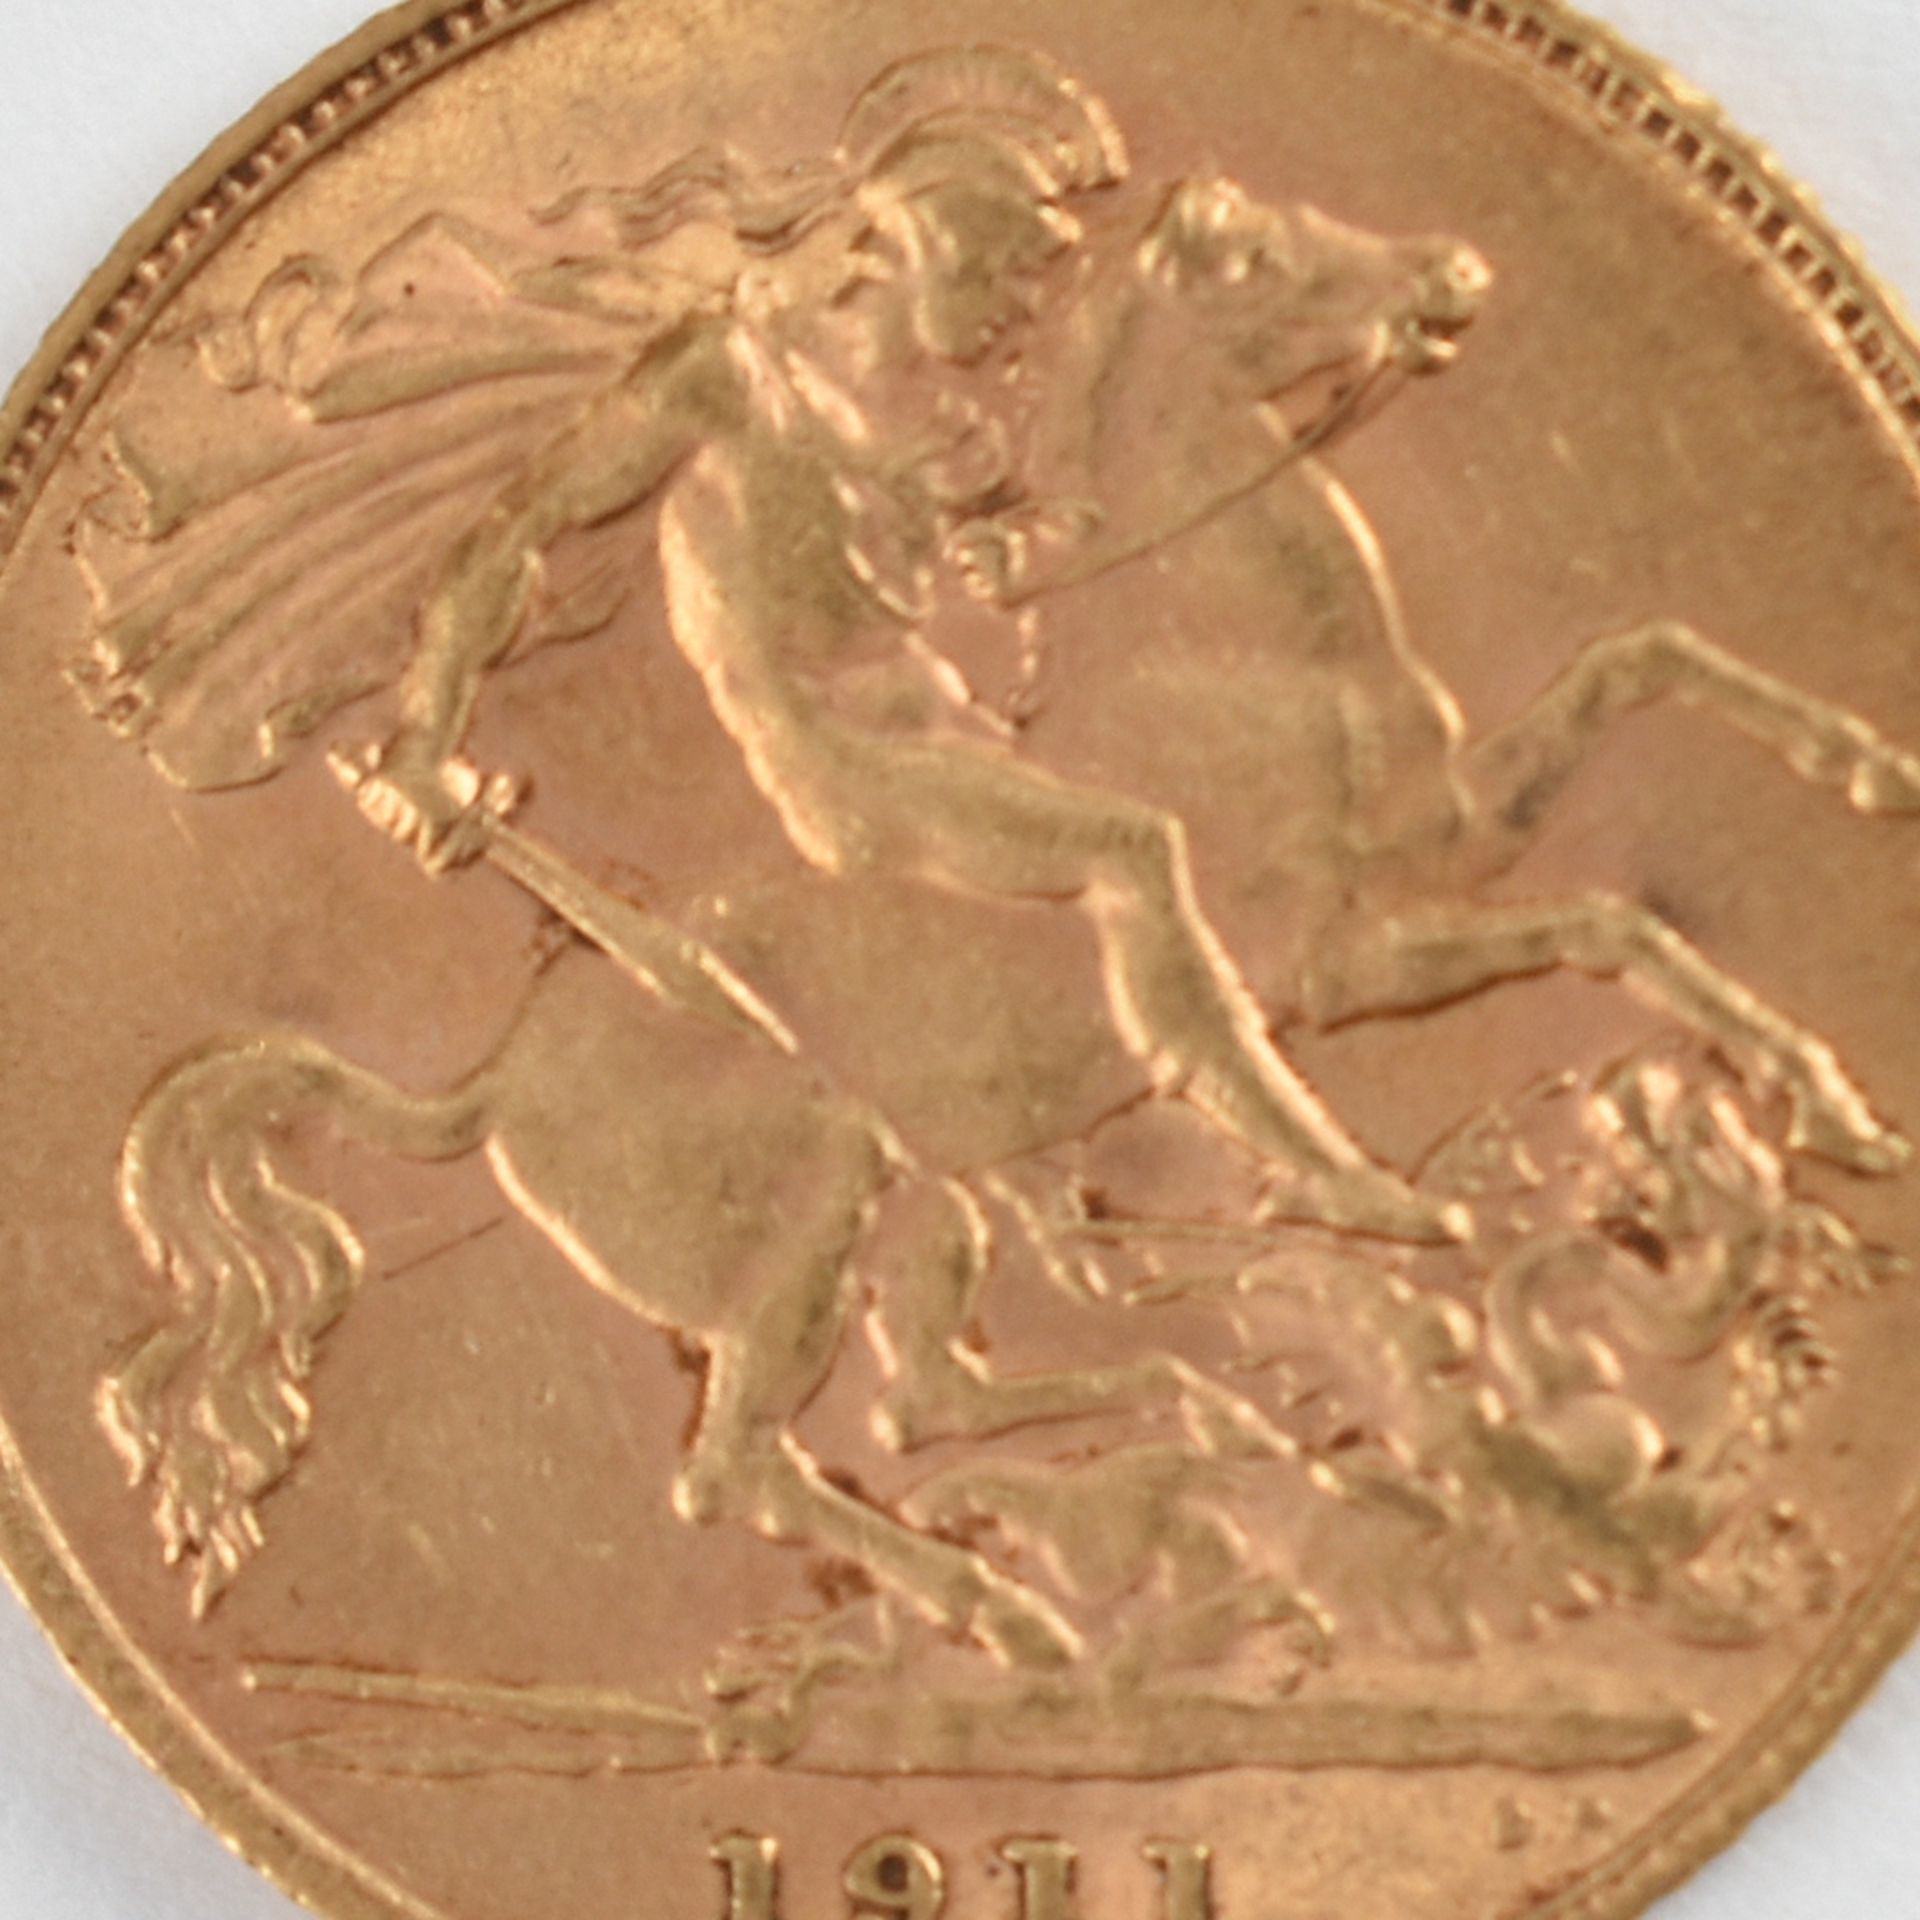 Goldmünze Großbritannien 1911 1/2 Sovereign - 1/2 Pfund in Gold, 3,994 g, 916/1000, D ca. 19,3 mm,